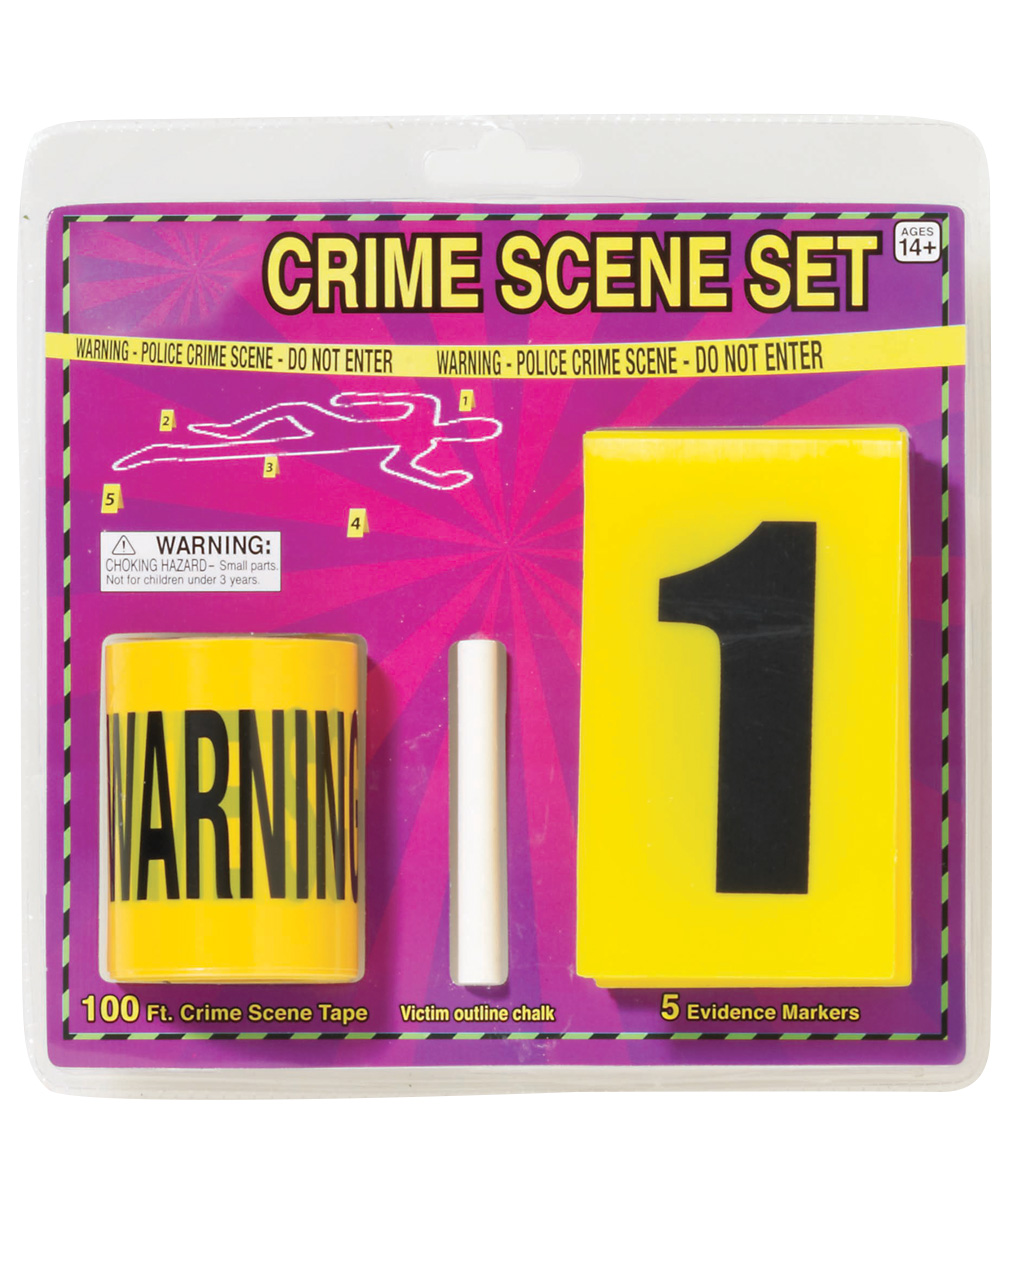 crime scene set polizei equipment mit dem crime scene set wirst du zum coolen spurenermittler krimi zuebhoer 216281